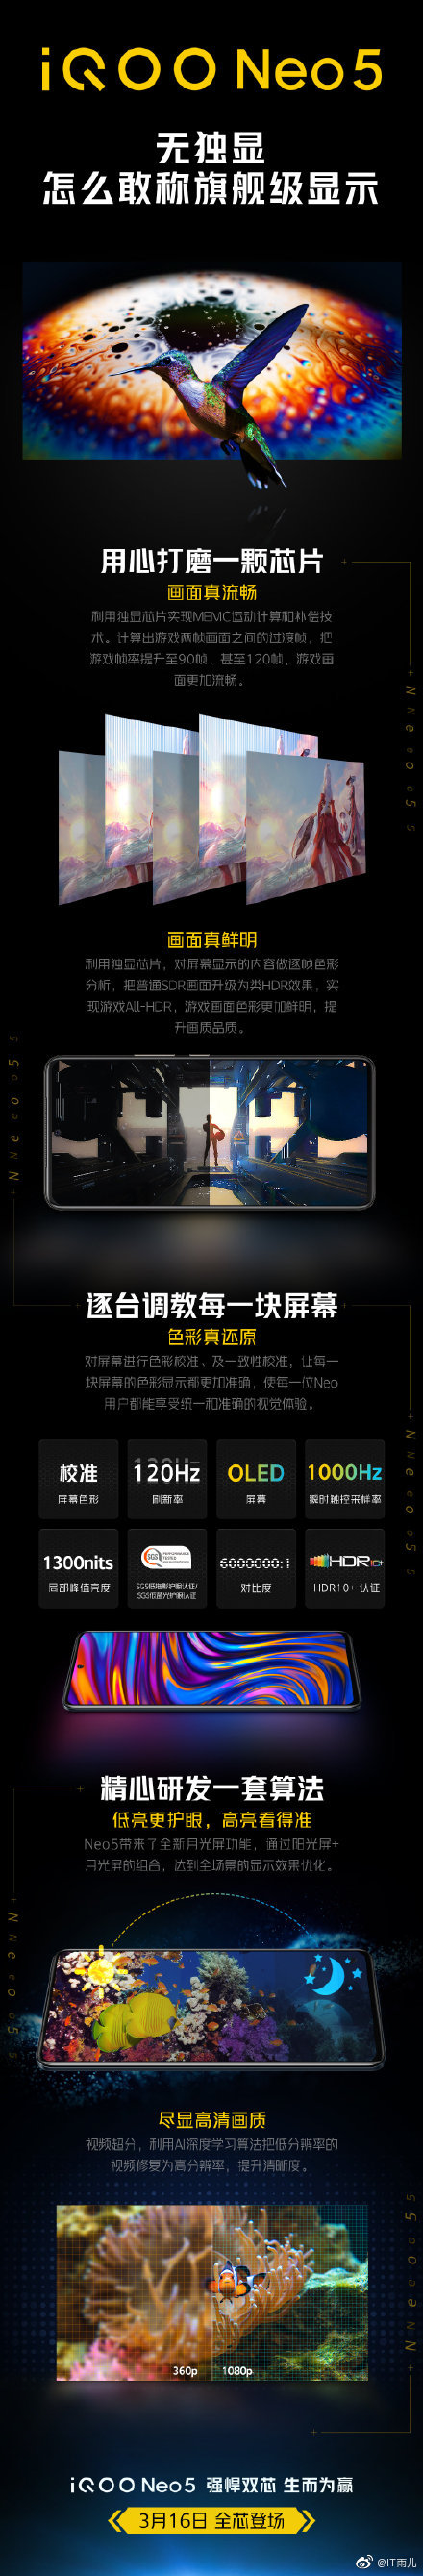 iQOO publie une affiche très médiatisée pour le lancement du Neo5. (Source : Weibo)